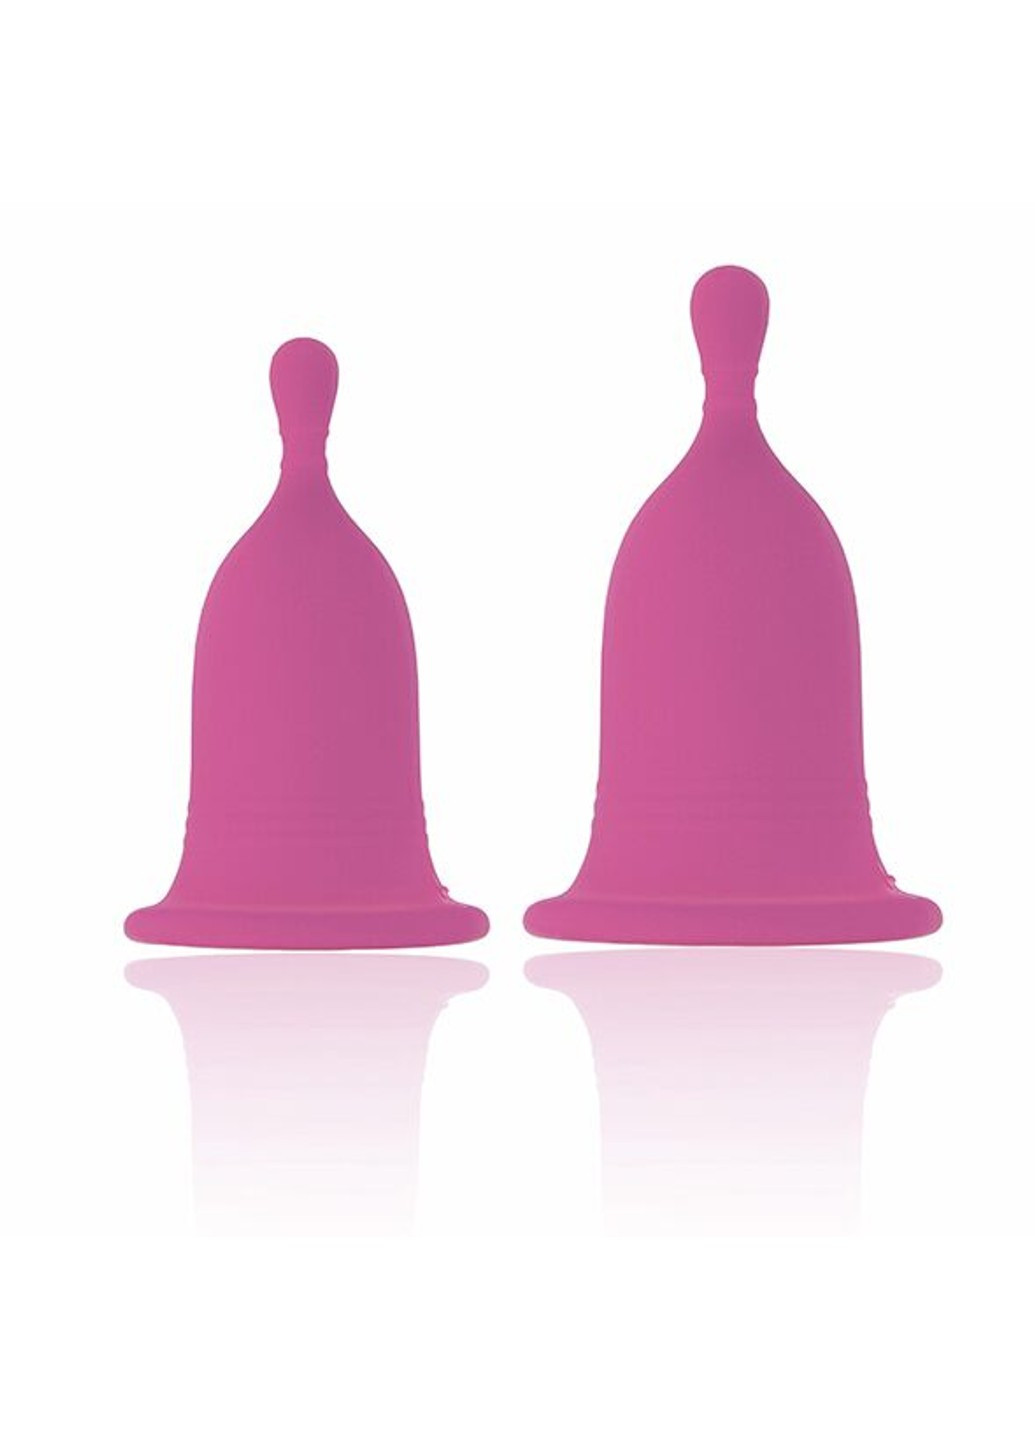 Менструальные чаши Femcare - Cherry Cup RIANNE S (255073614)